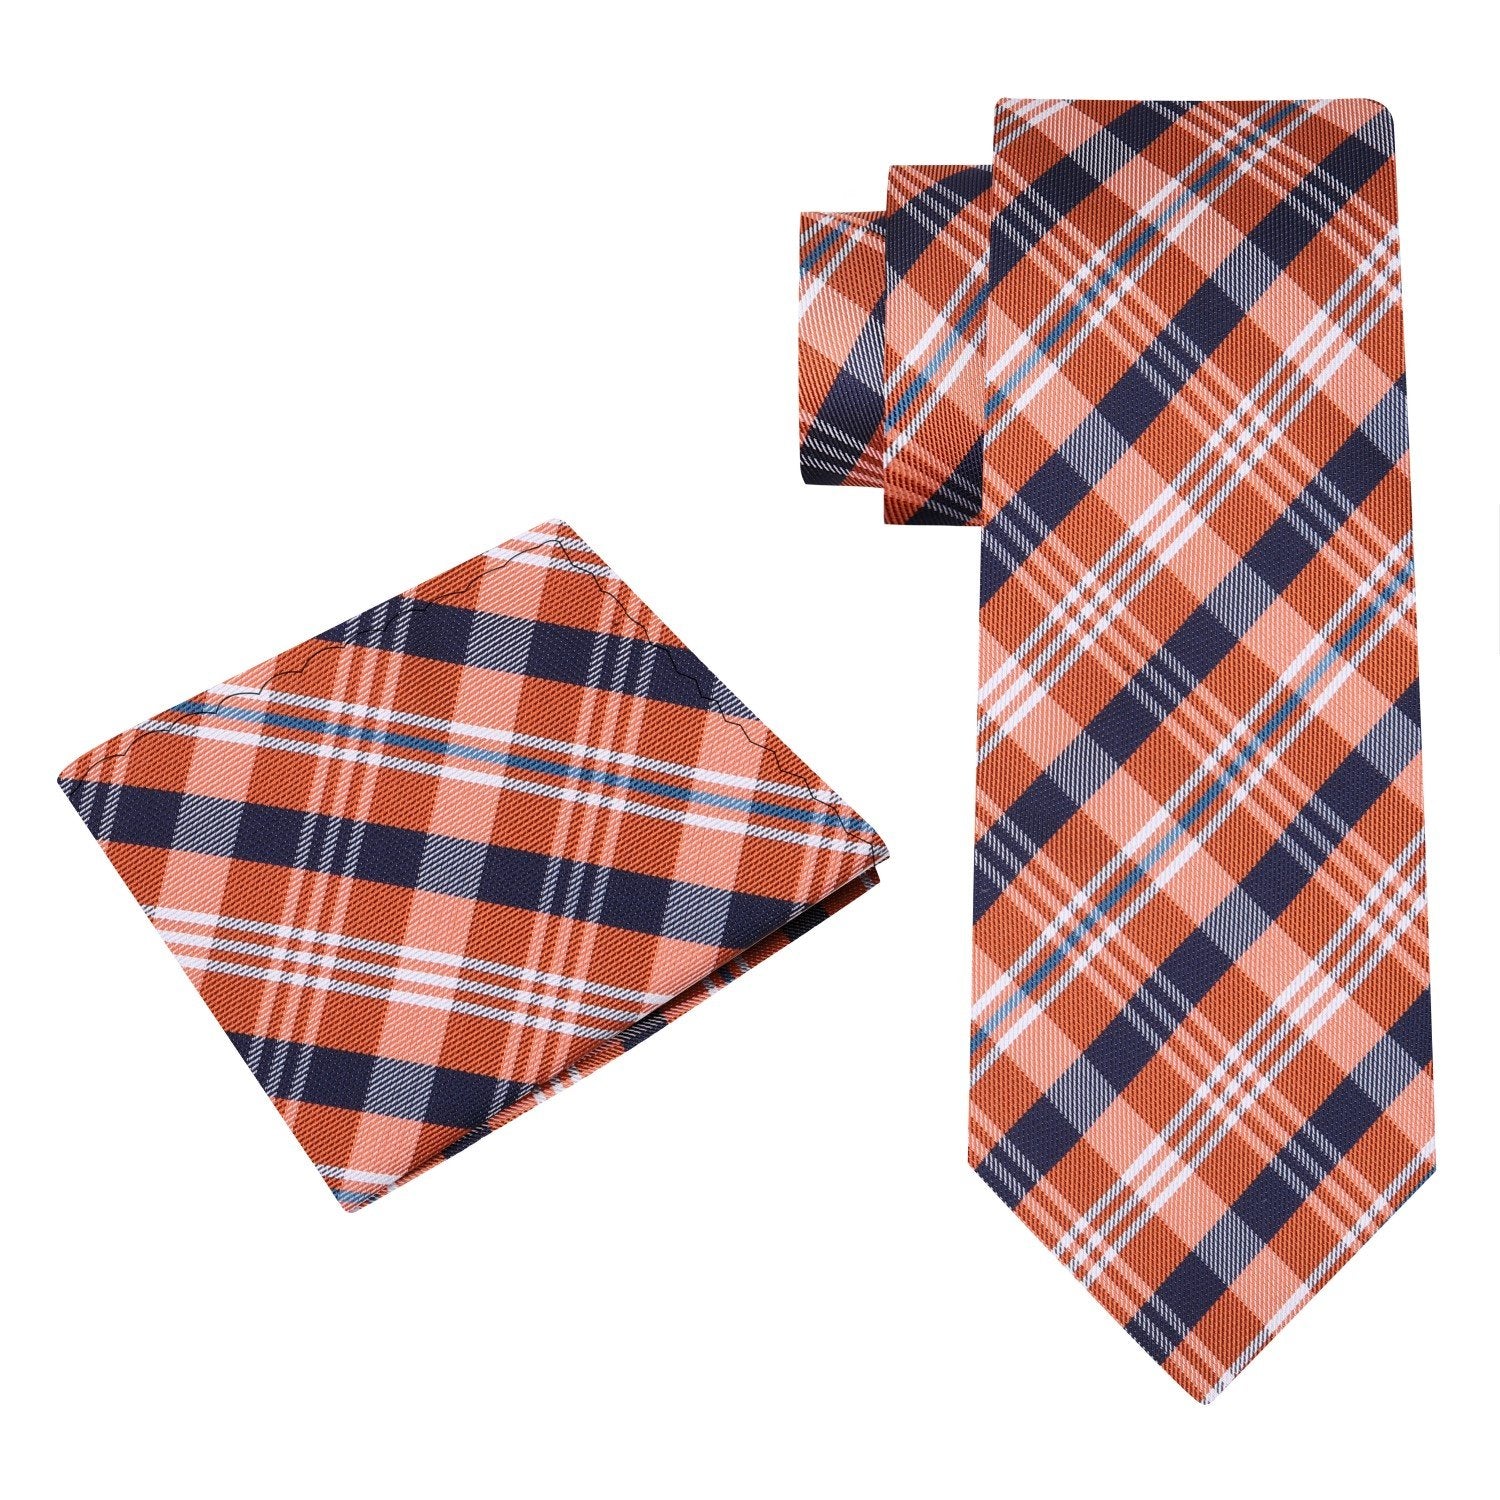 Alt View: An Orange And Dark Blue, White Plaid Pattern Silk Necktie, Matching Pocket Square